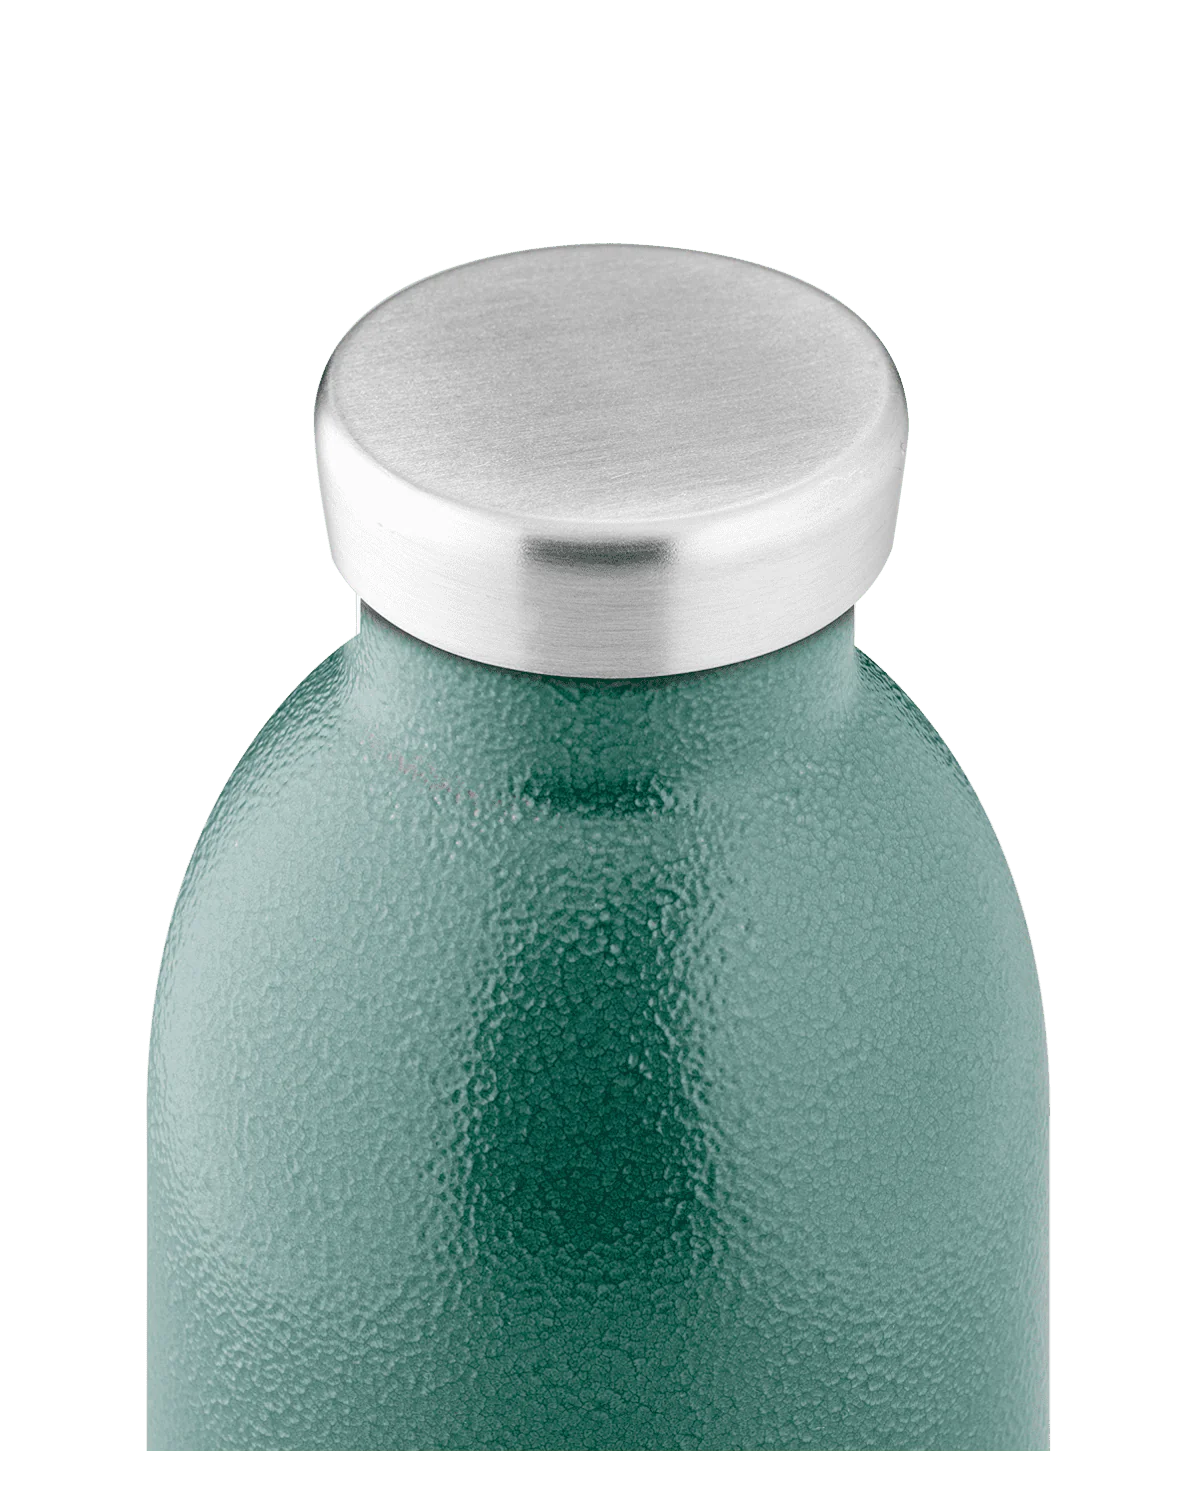 Gourde isotherme Rustic Moss Green de la marque italienne 24 Bottles en acier inoxydable